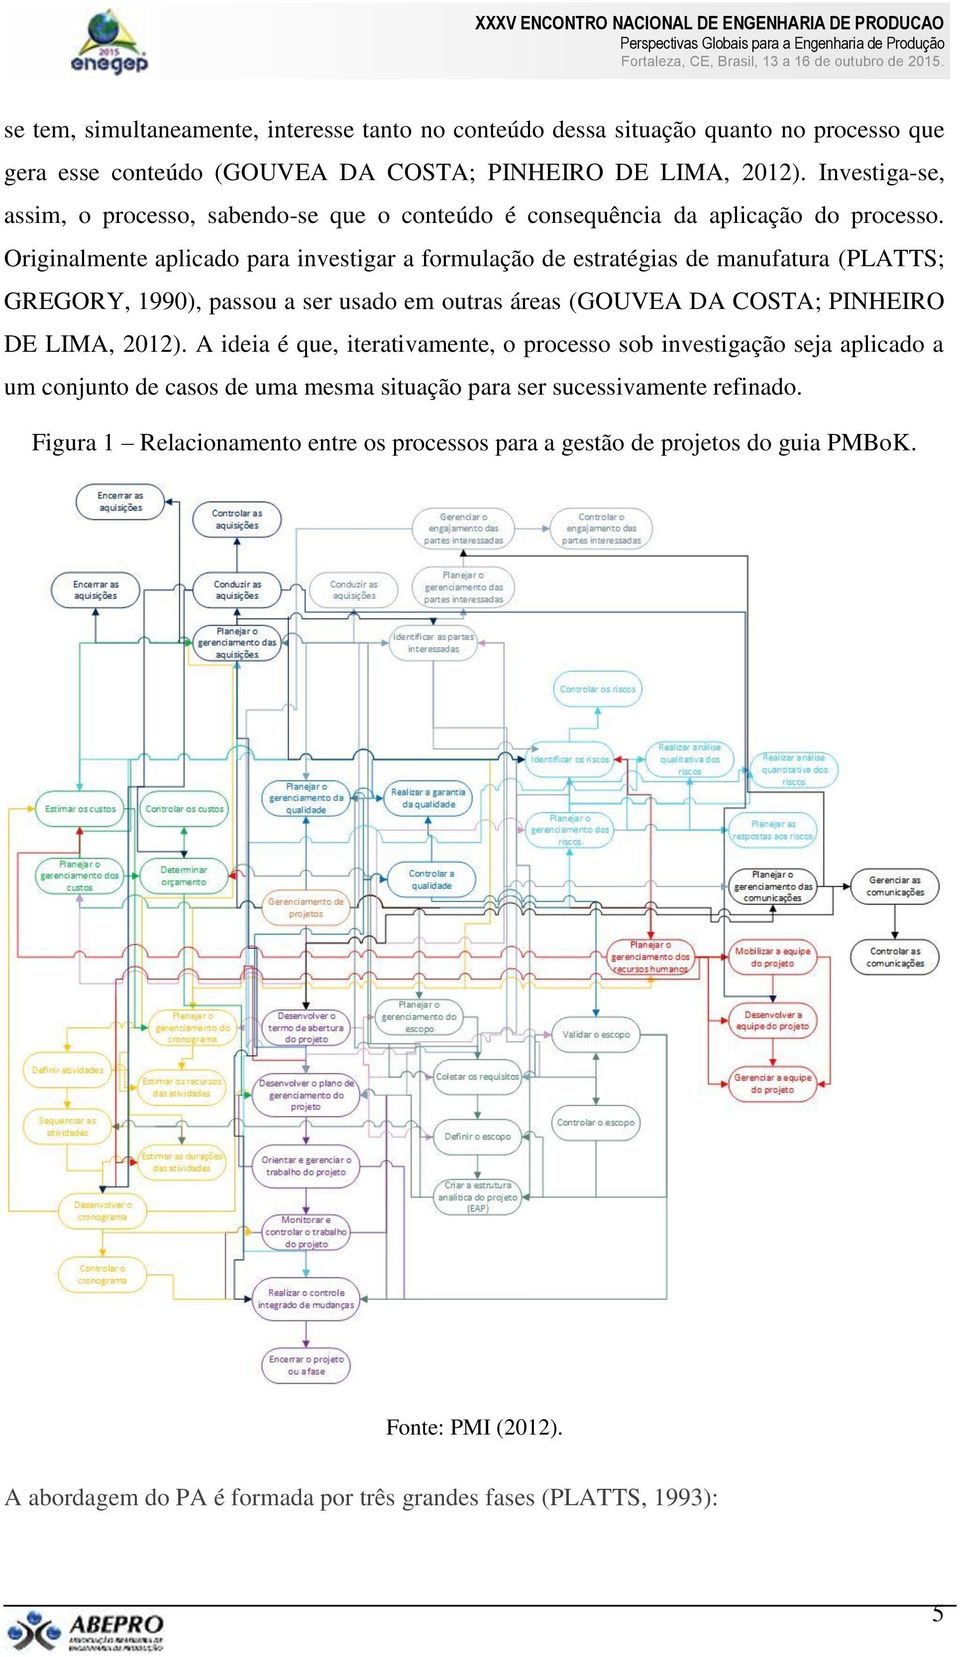 Originalmente aplicado para investigar a formulação de estratégias de manufatura (PLATTS; GREGORY, 1990), passou a ser usado em outras áreas (GOUVEA DA COSTA; PINHEIRO DE LIMA, 2012).